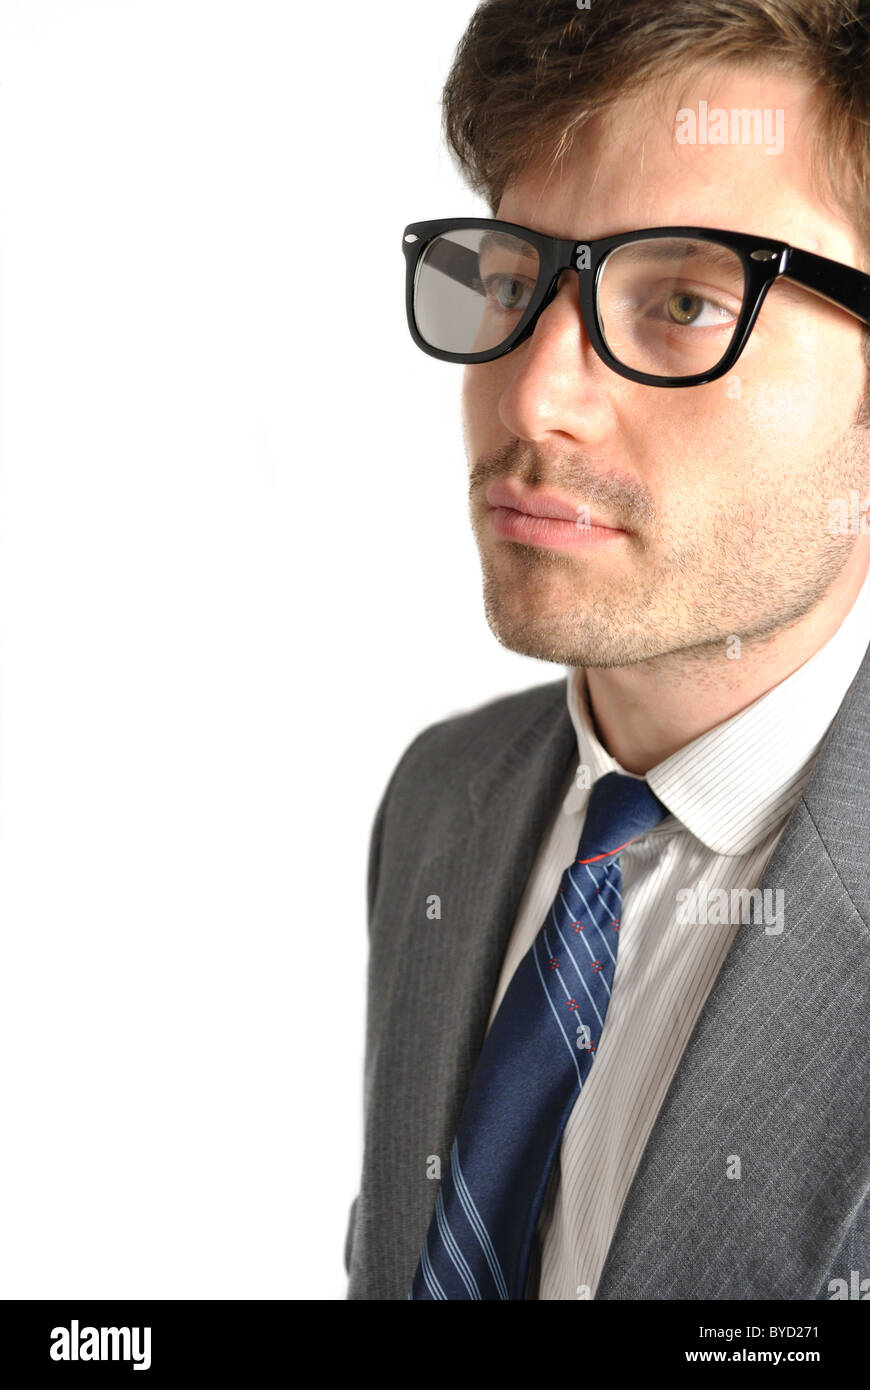 Retrato de un hombre con gafas. Foto de stock